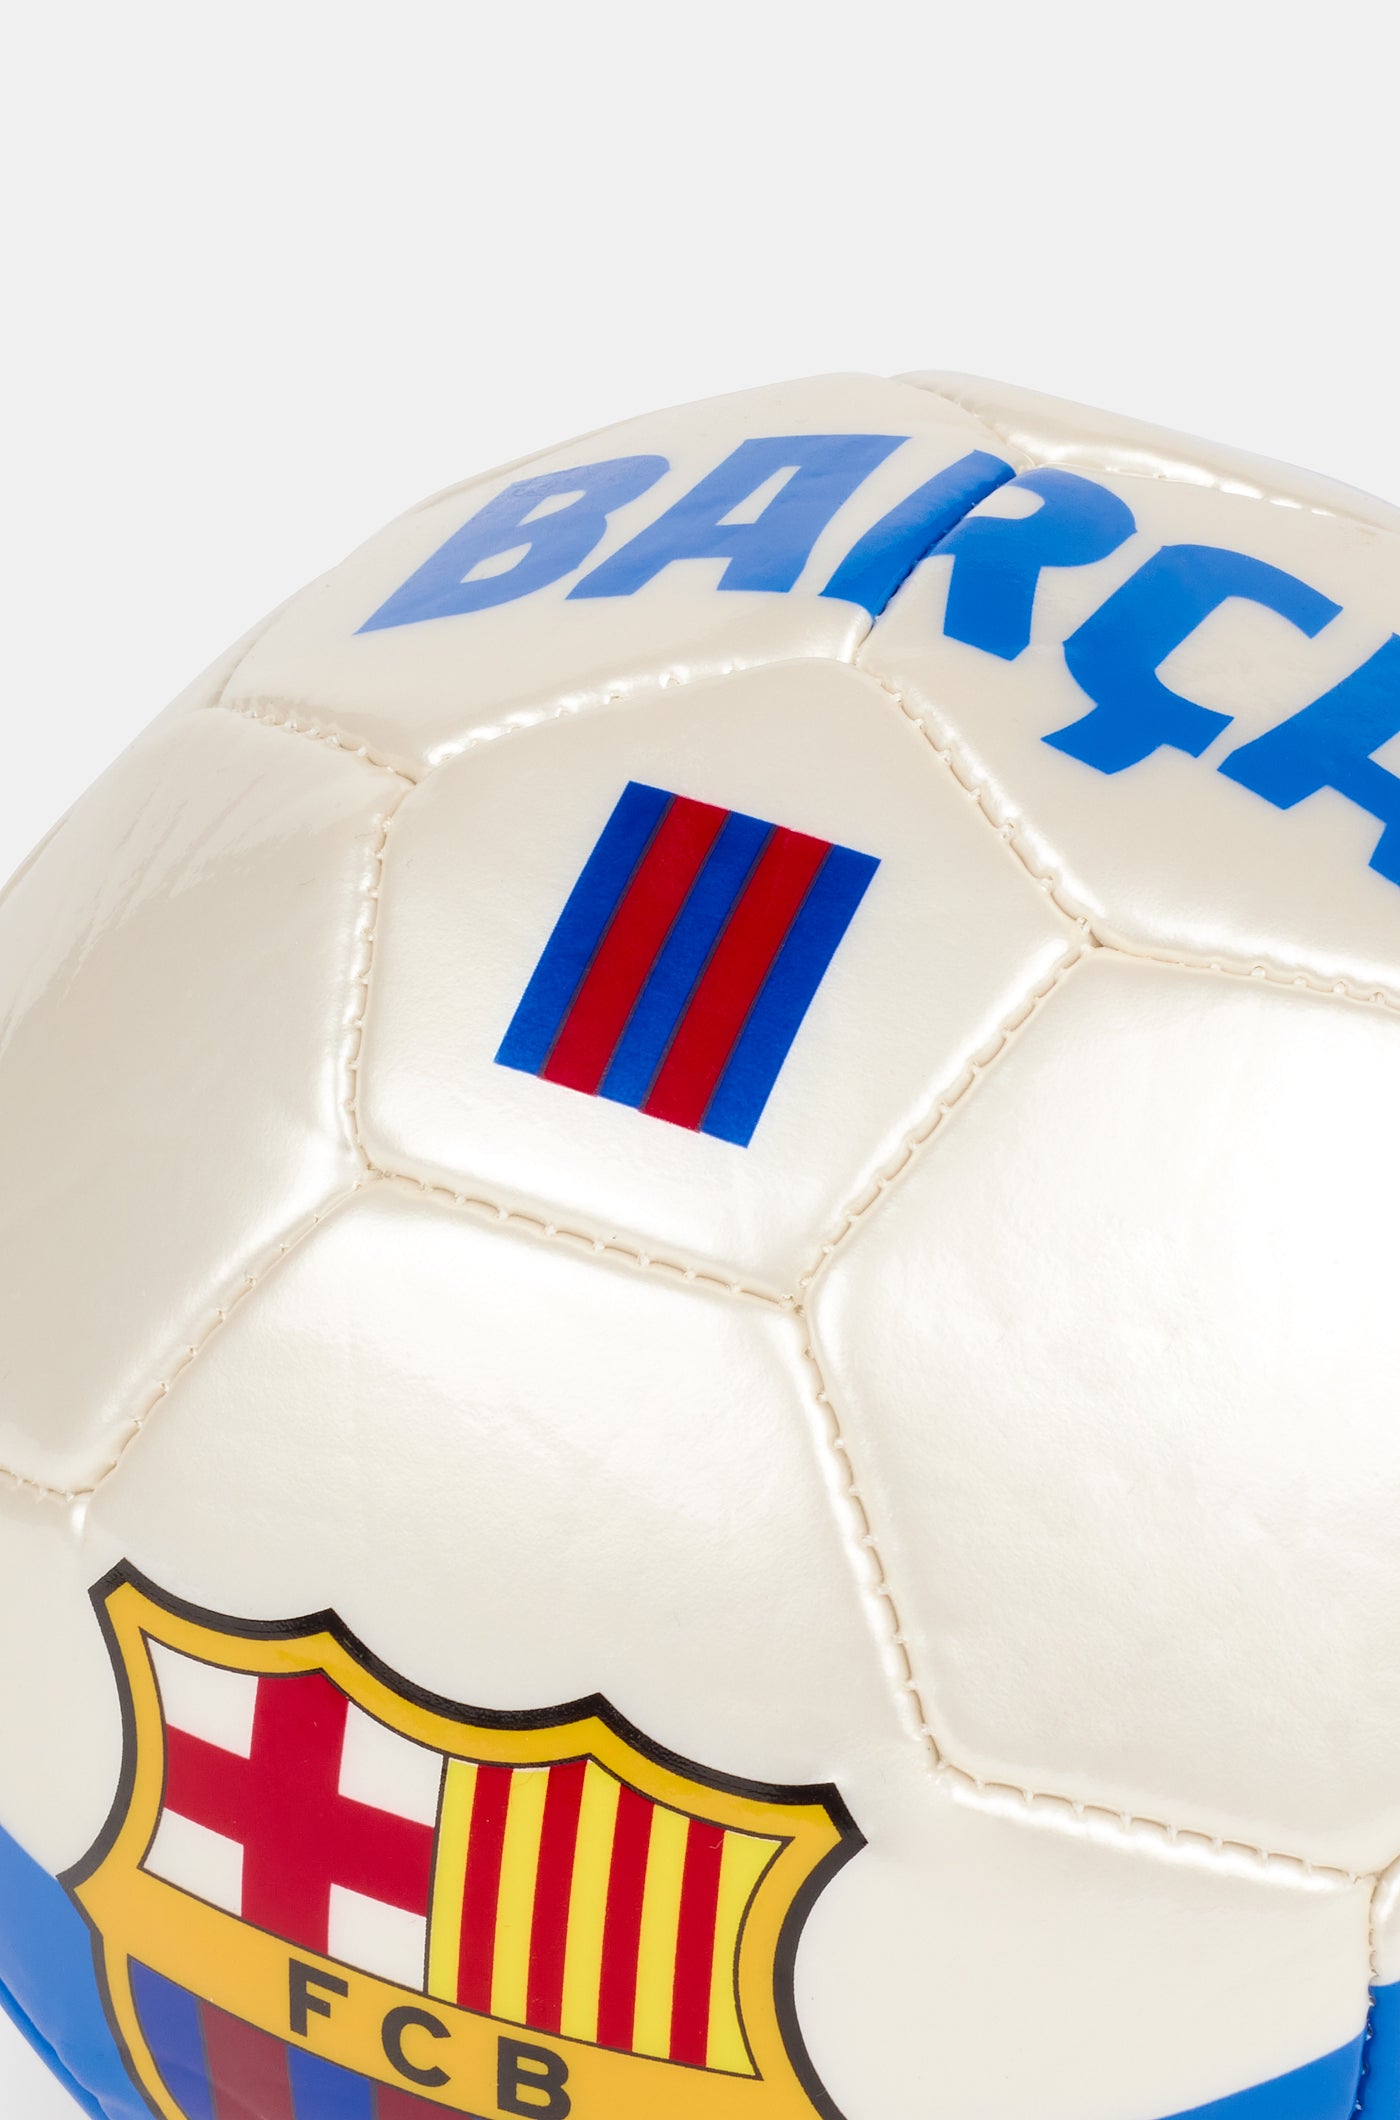 Auswärtstrikot Ball FC Barcelona – klein